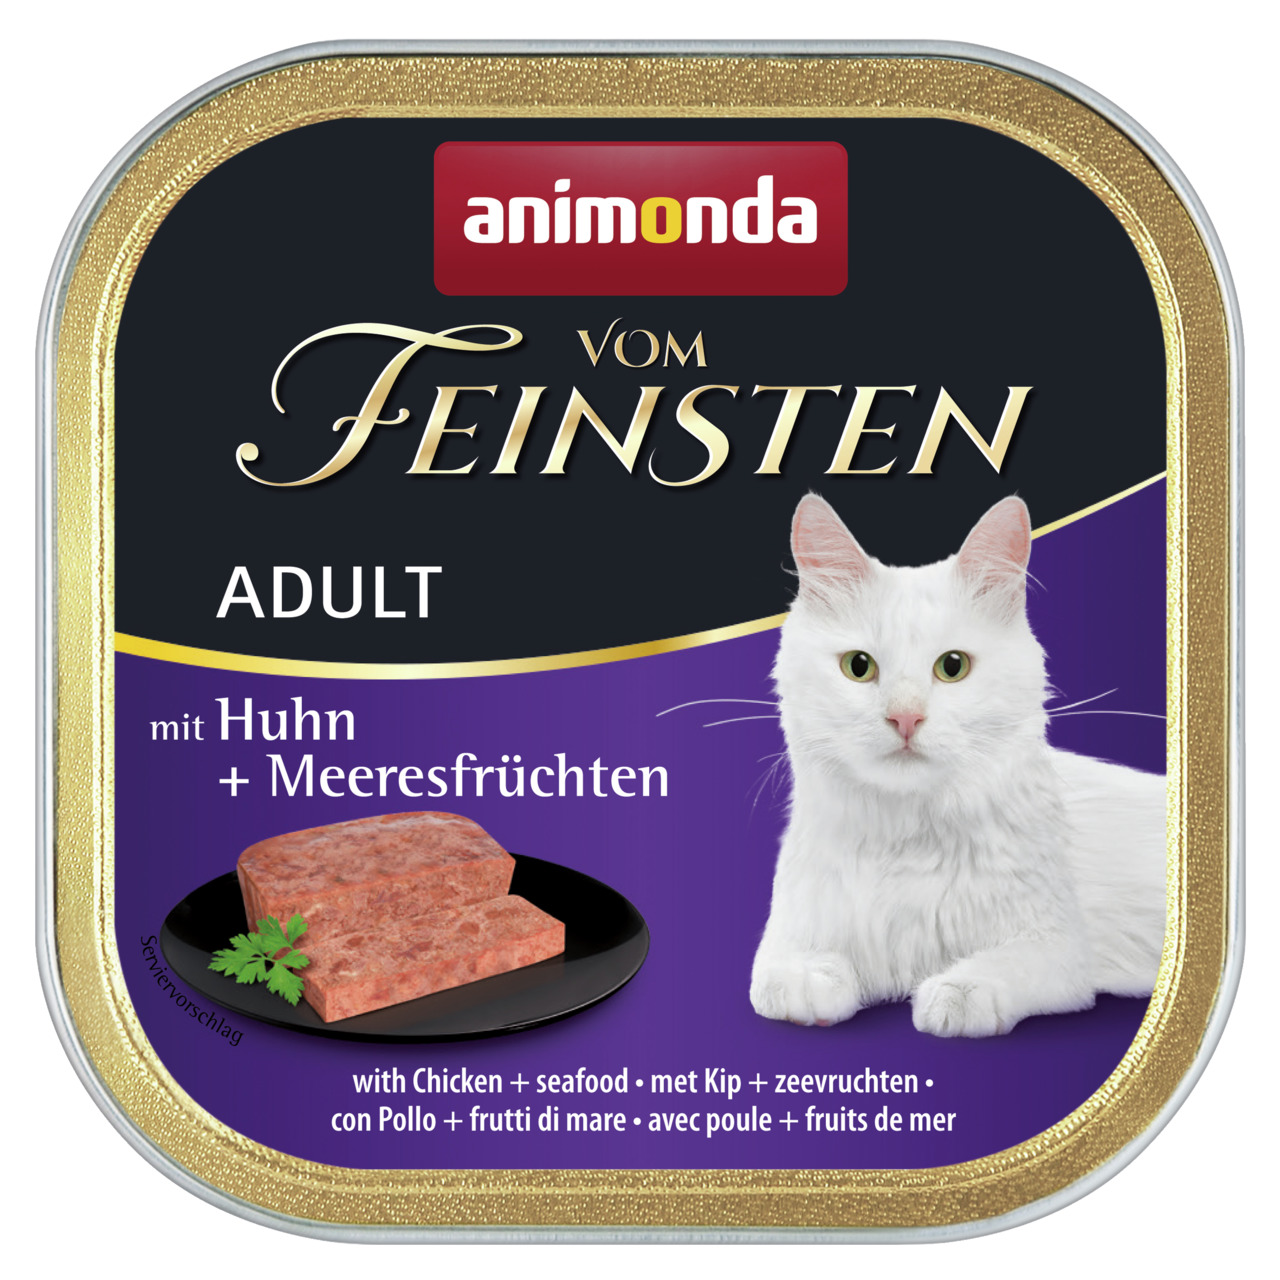 Animonda vom Feinsten Adult mit Huhn + Meeresfrüchten Katzen Nassfutter 100 g